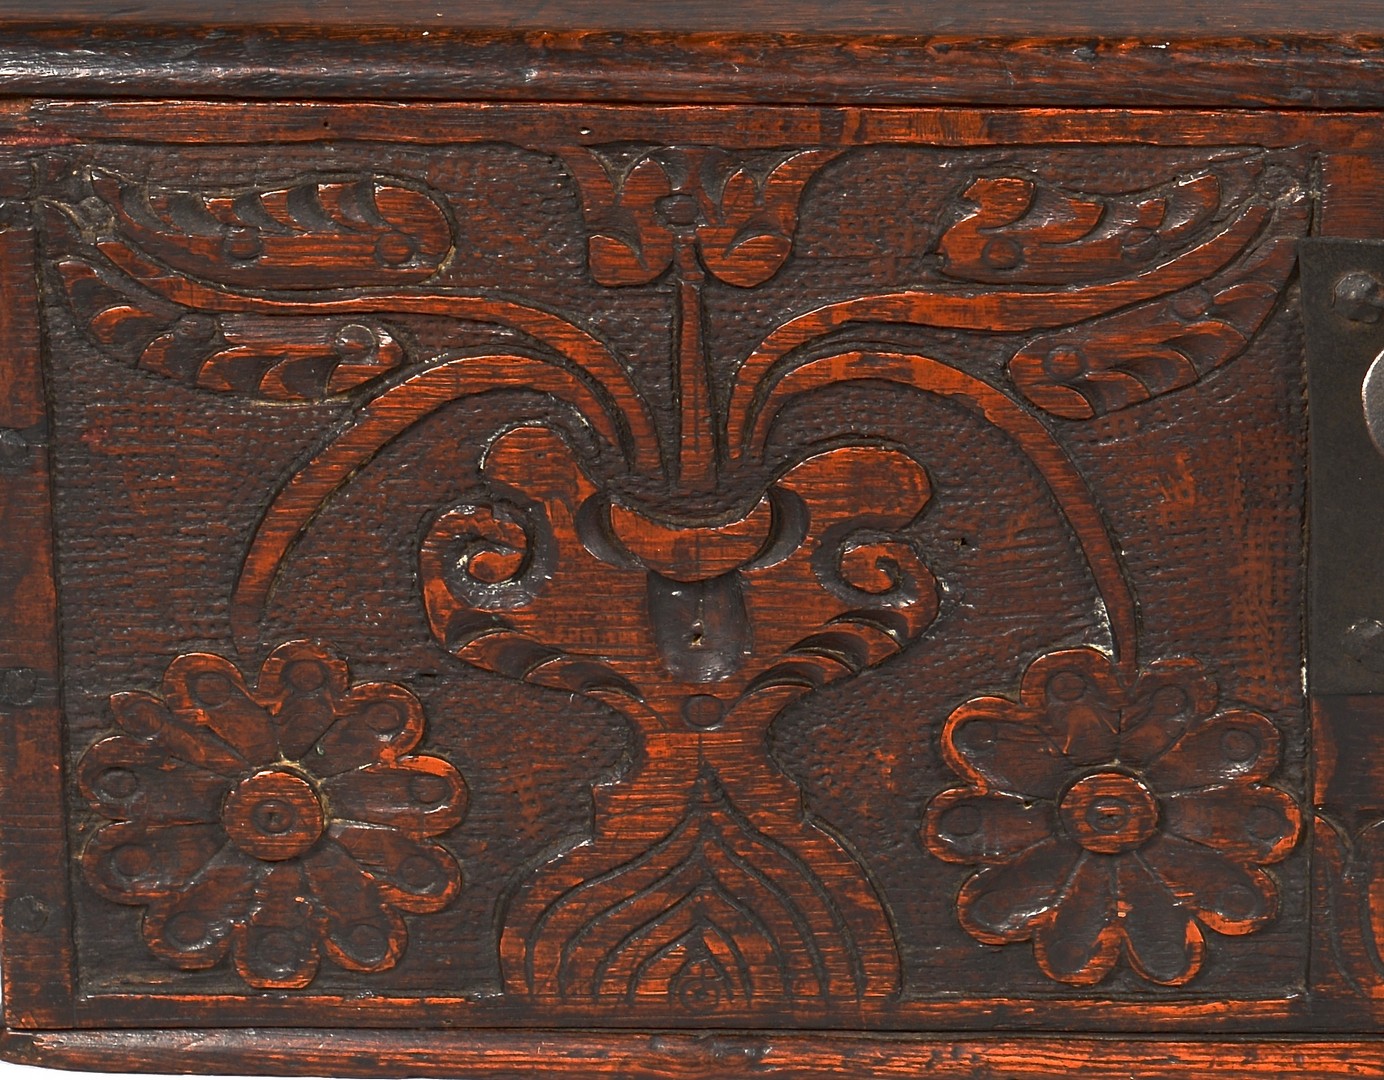 Lot 643: Carved Oak English Bible Box